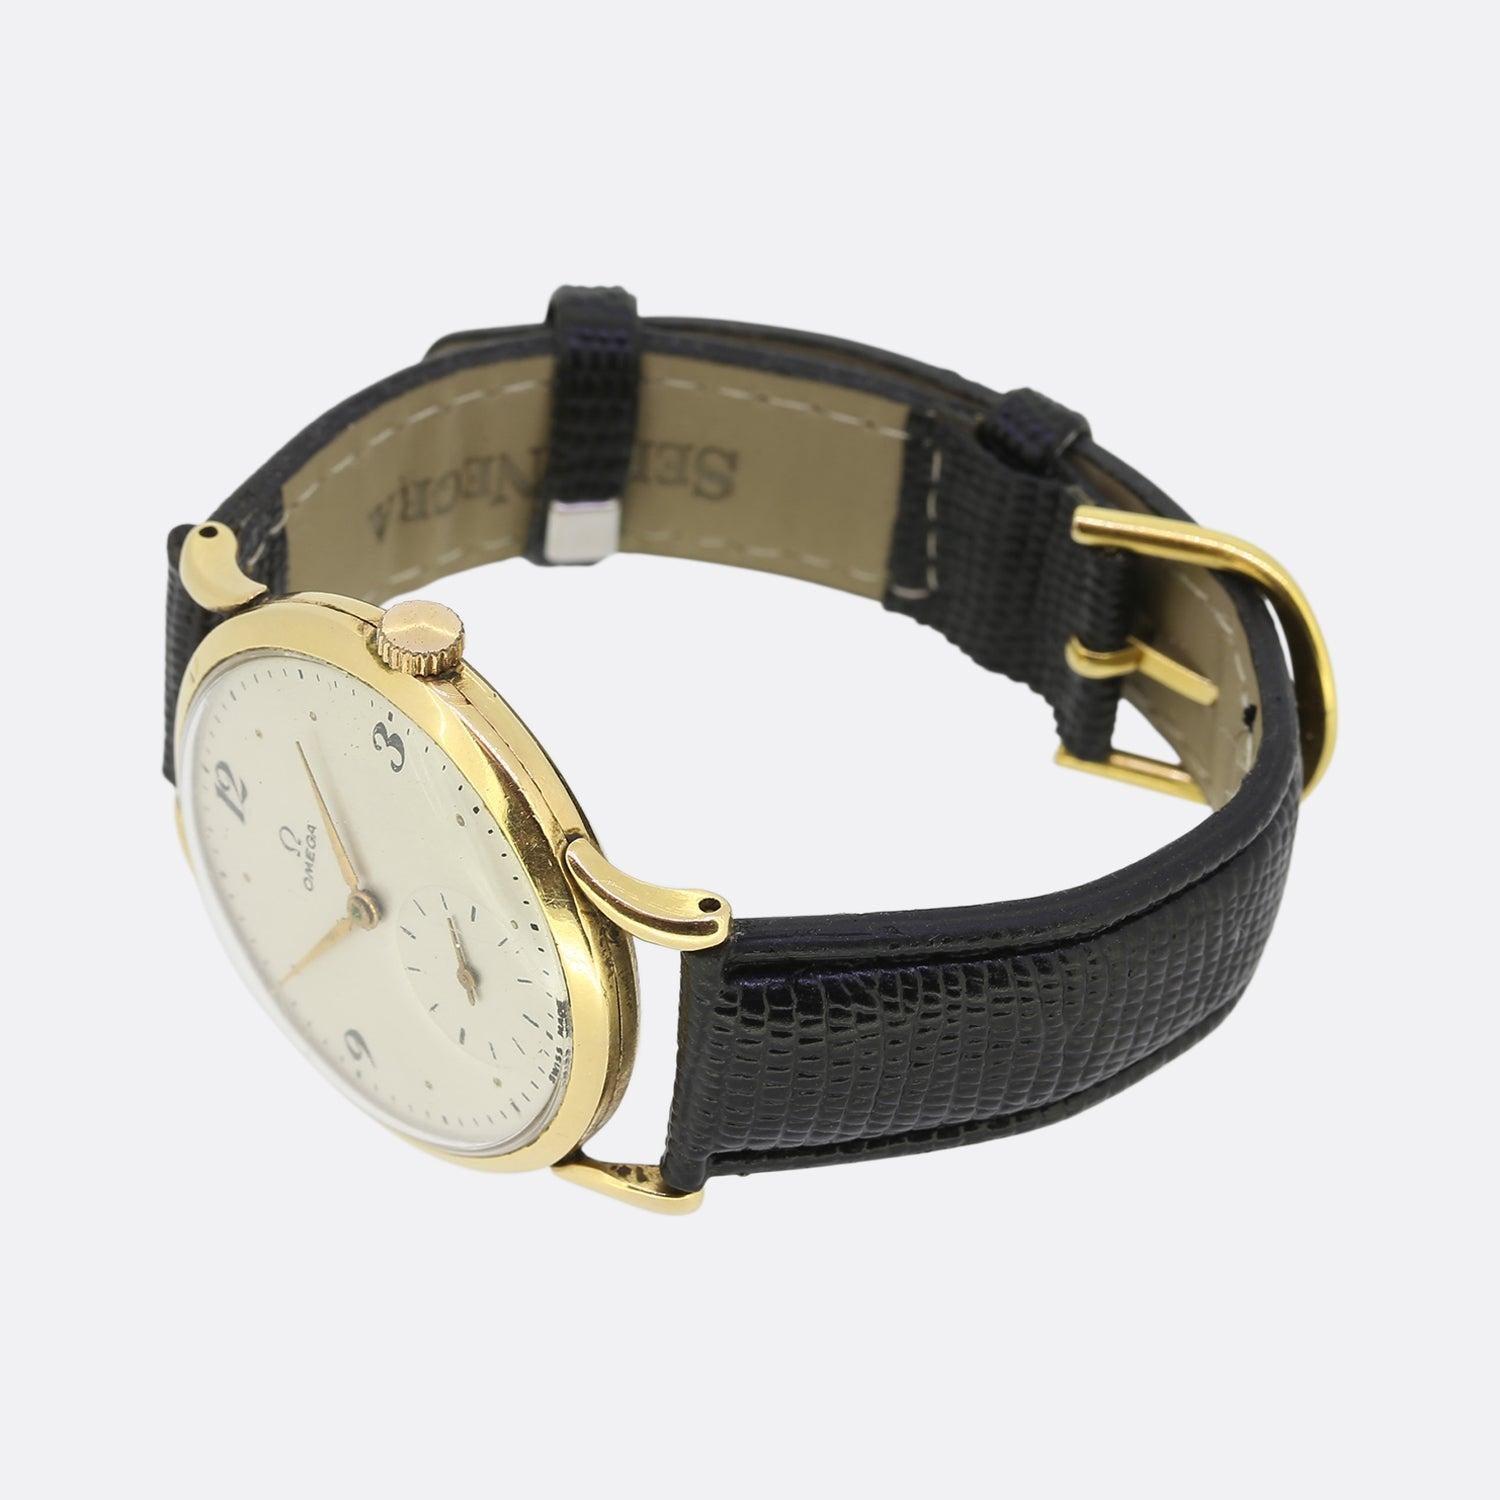 Il s'agit d'une montre-bracelet Omega vintage en or jaune 18ct pour homme. La montre comporte toutes ses pièces d'origine, y compris le boîtier et le cadran. Cependant, la boucle, le bracelet et la couronne ont été remplacés à un moment donné.


Les